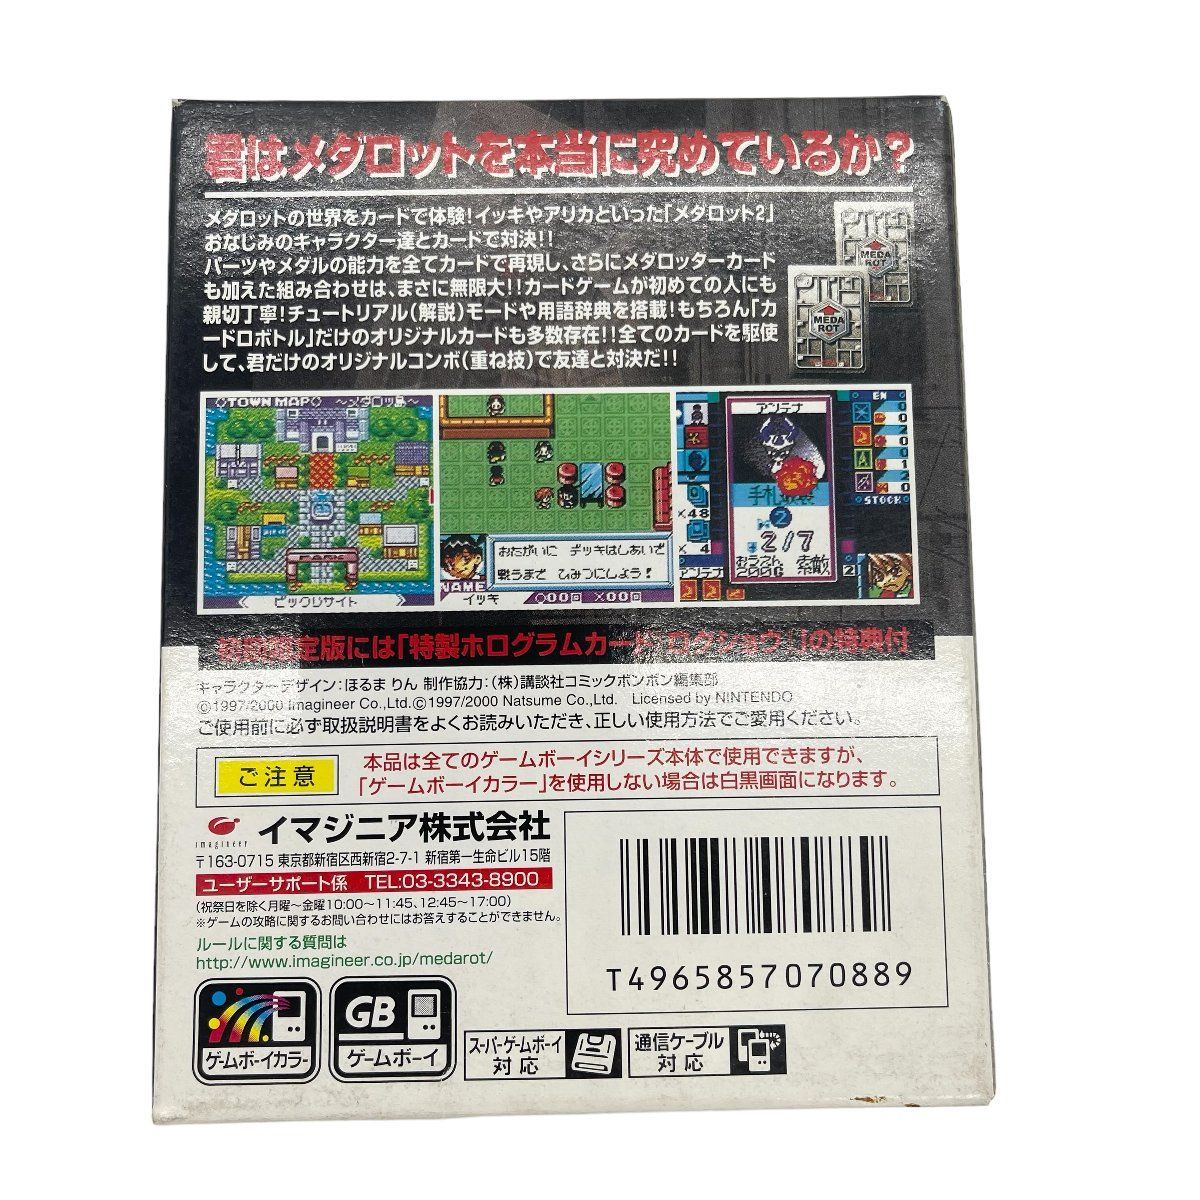 ゲームボーイカラー 初回限定版 メダロット カードロボトル クワガタ